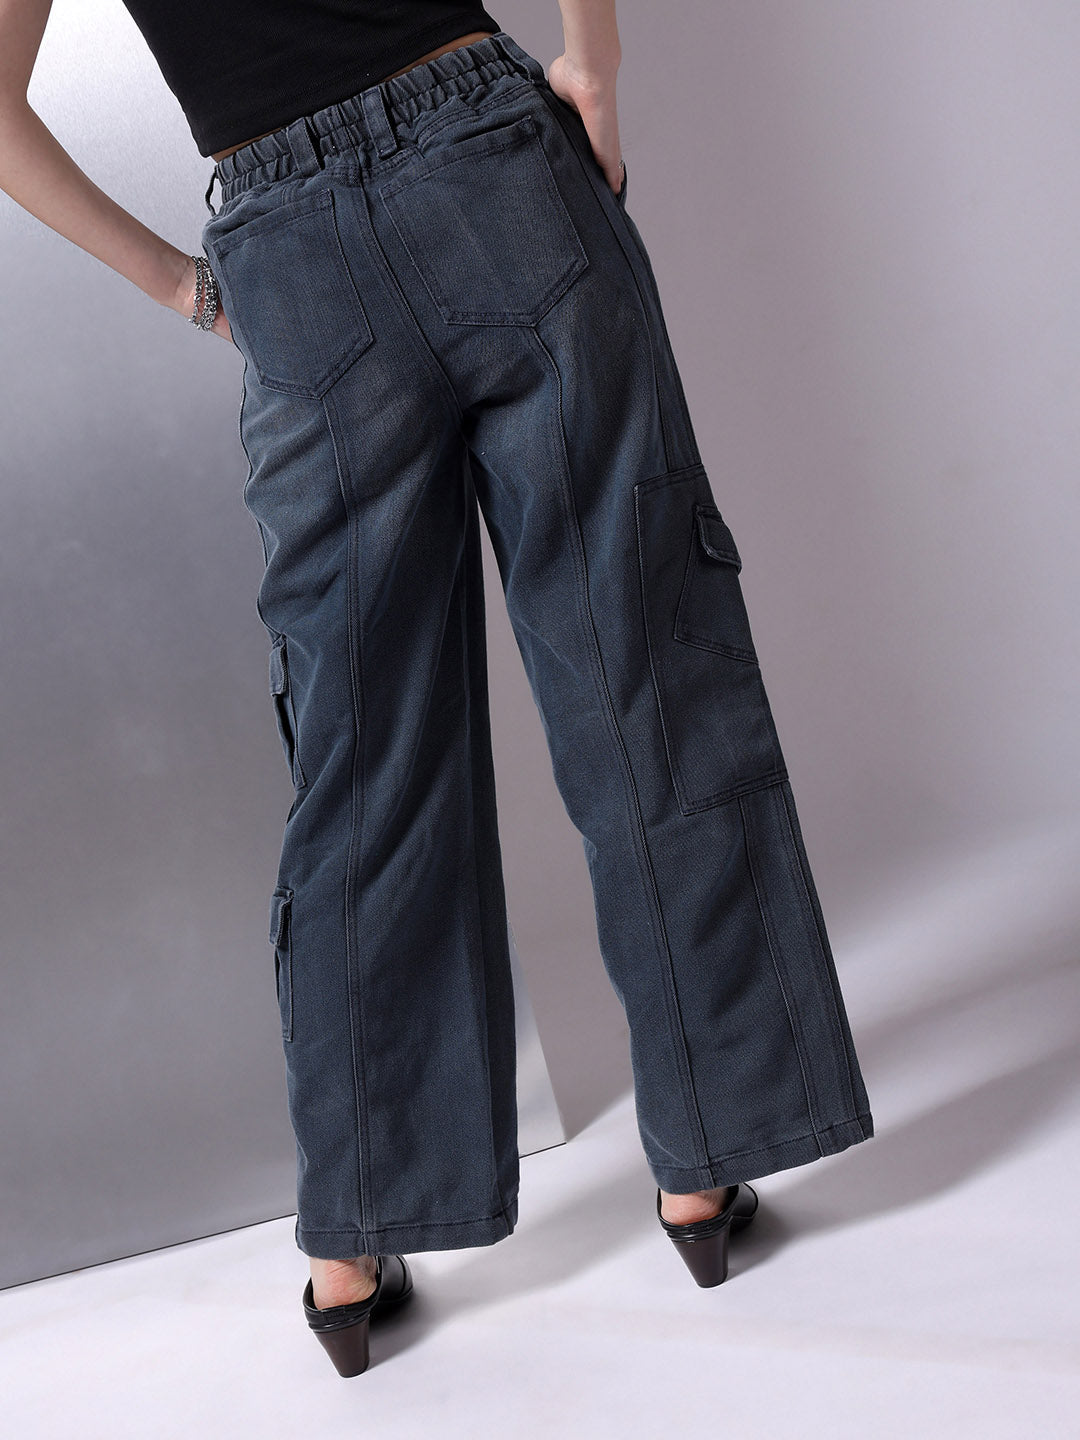 Shop Women Flared Jeans Online.